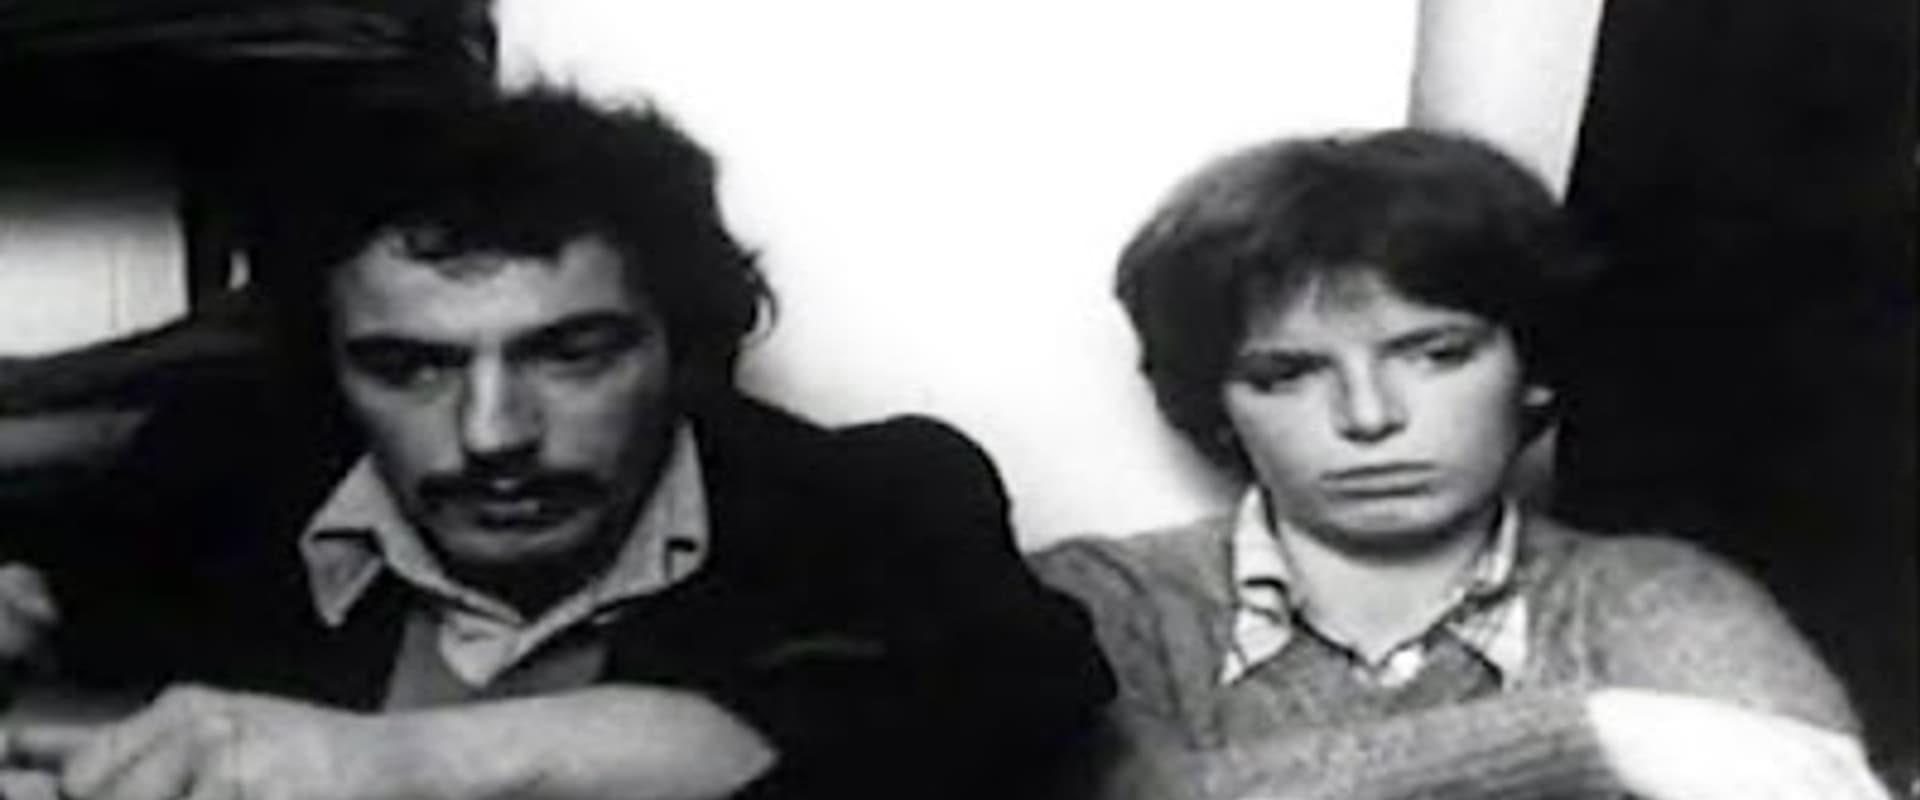 Storia di Filomena e Antonio: Gli anni '70 e la droga a Milano